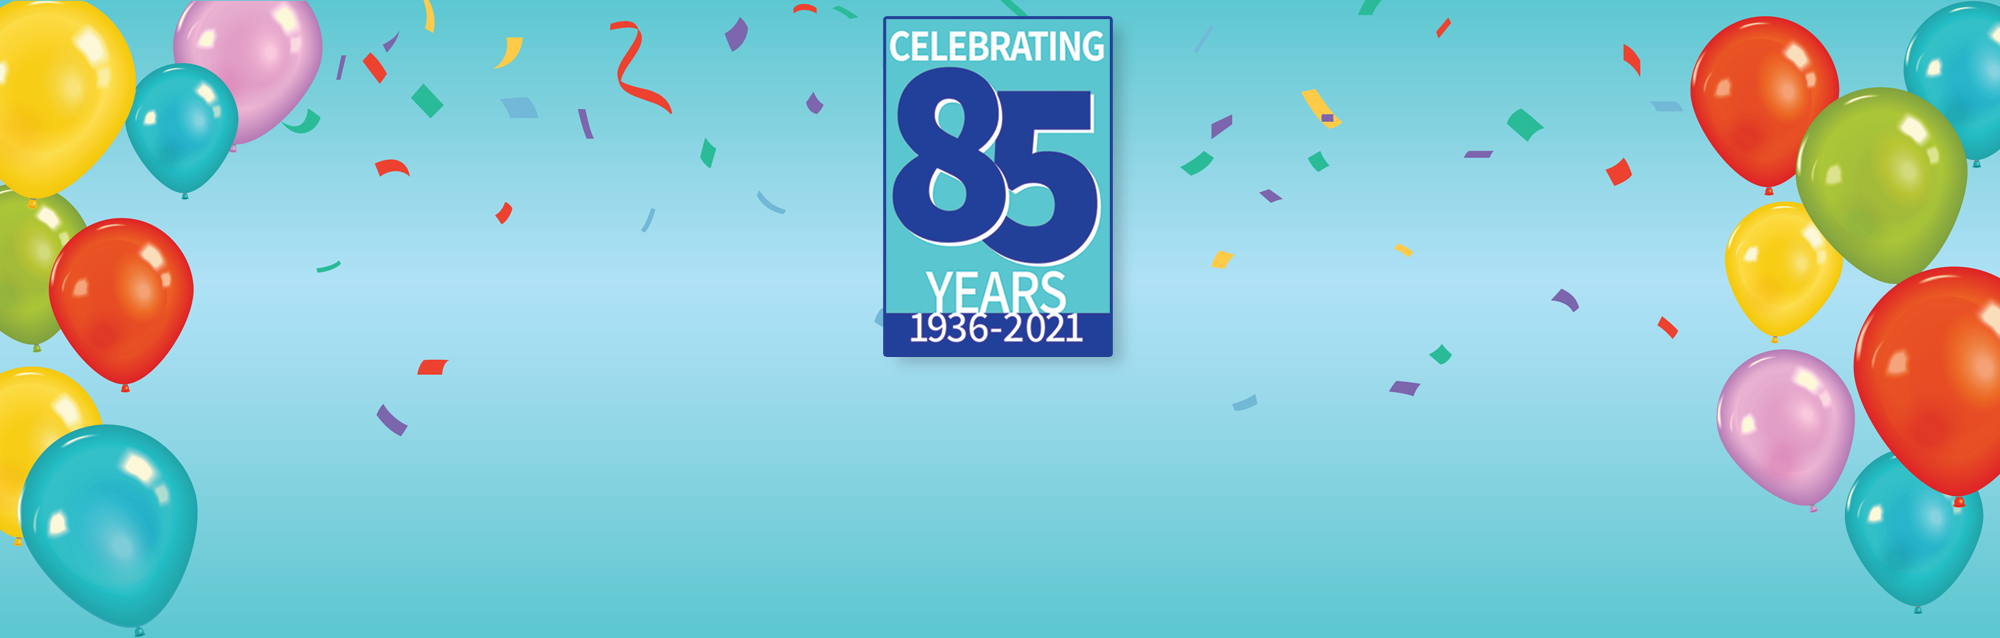 Celebrating 85 years 1936 - 2021